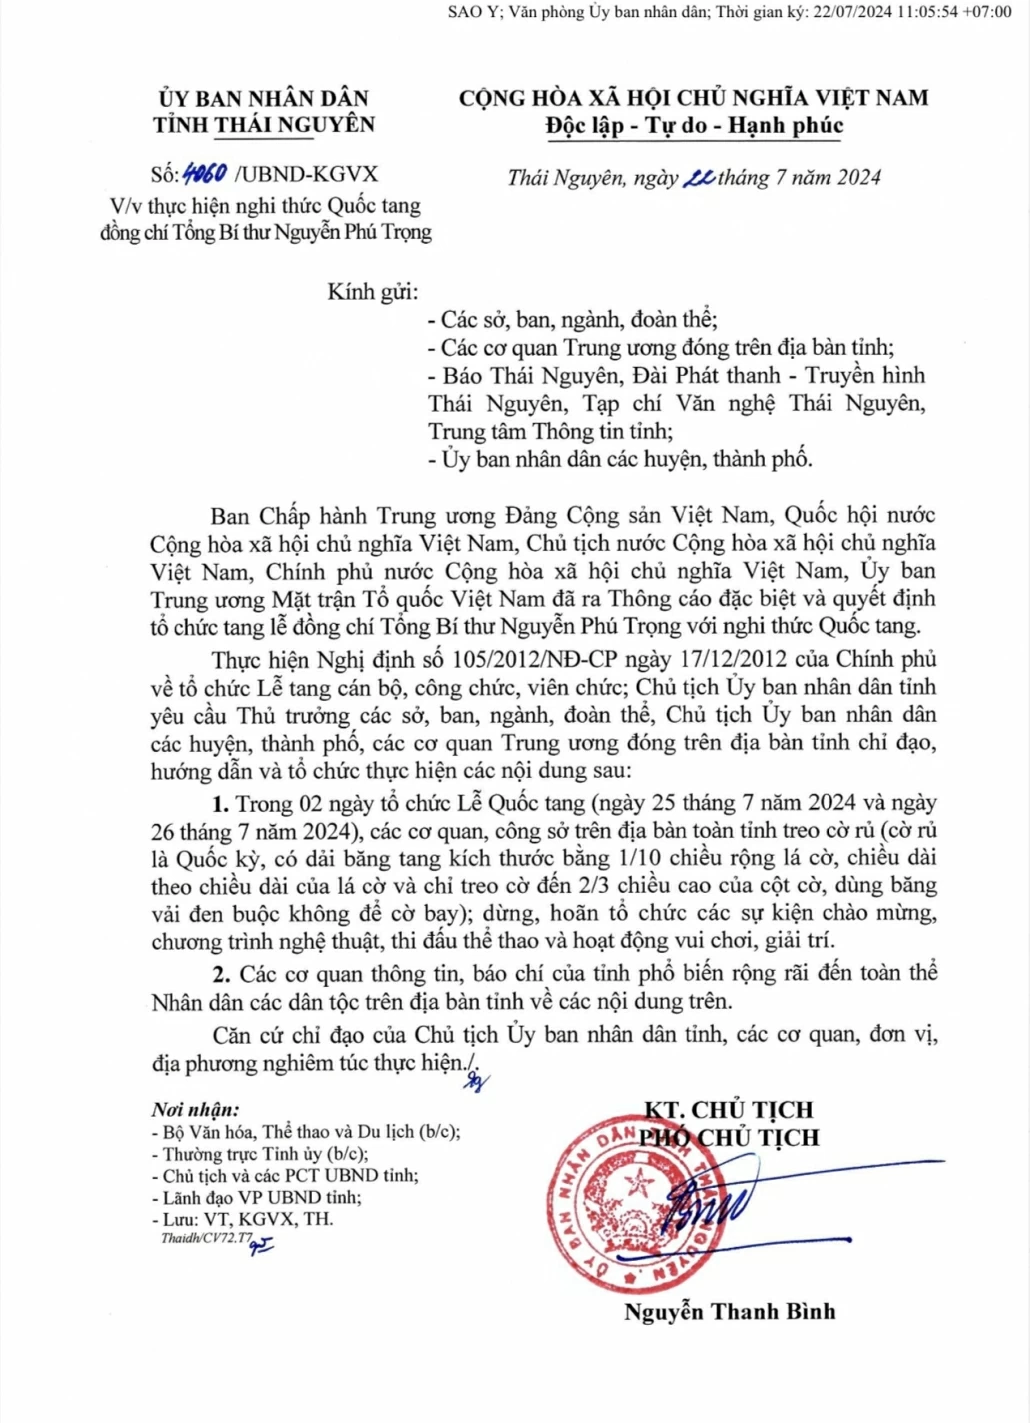 [Trực tuyến]: Tổng kết Đợt thi đua đặc biệt Kỷ niệm 75 năm Ngày Chủ tịch Hồ Chí Minh ra Lời kêu gọi thi đua ái quốc (11/6/1948-11/6/2023)